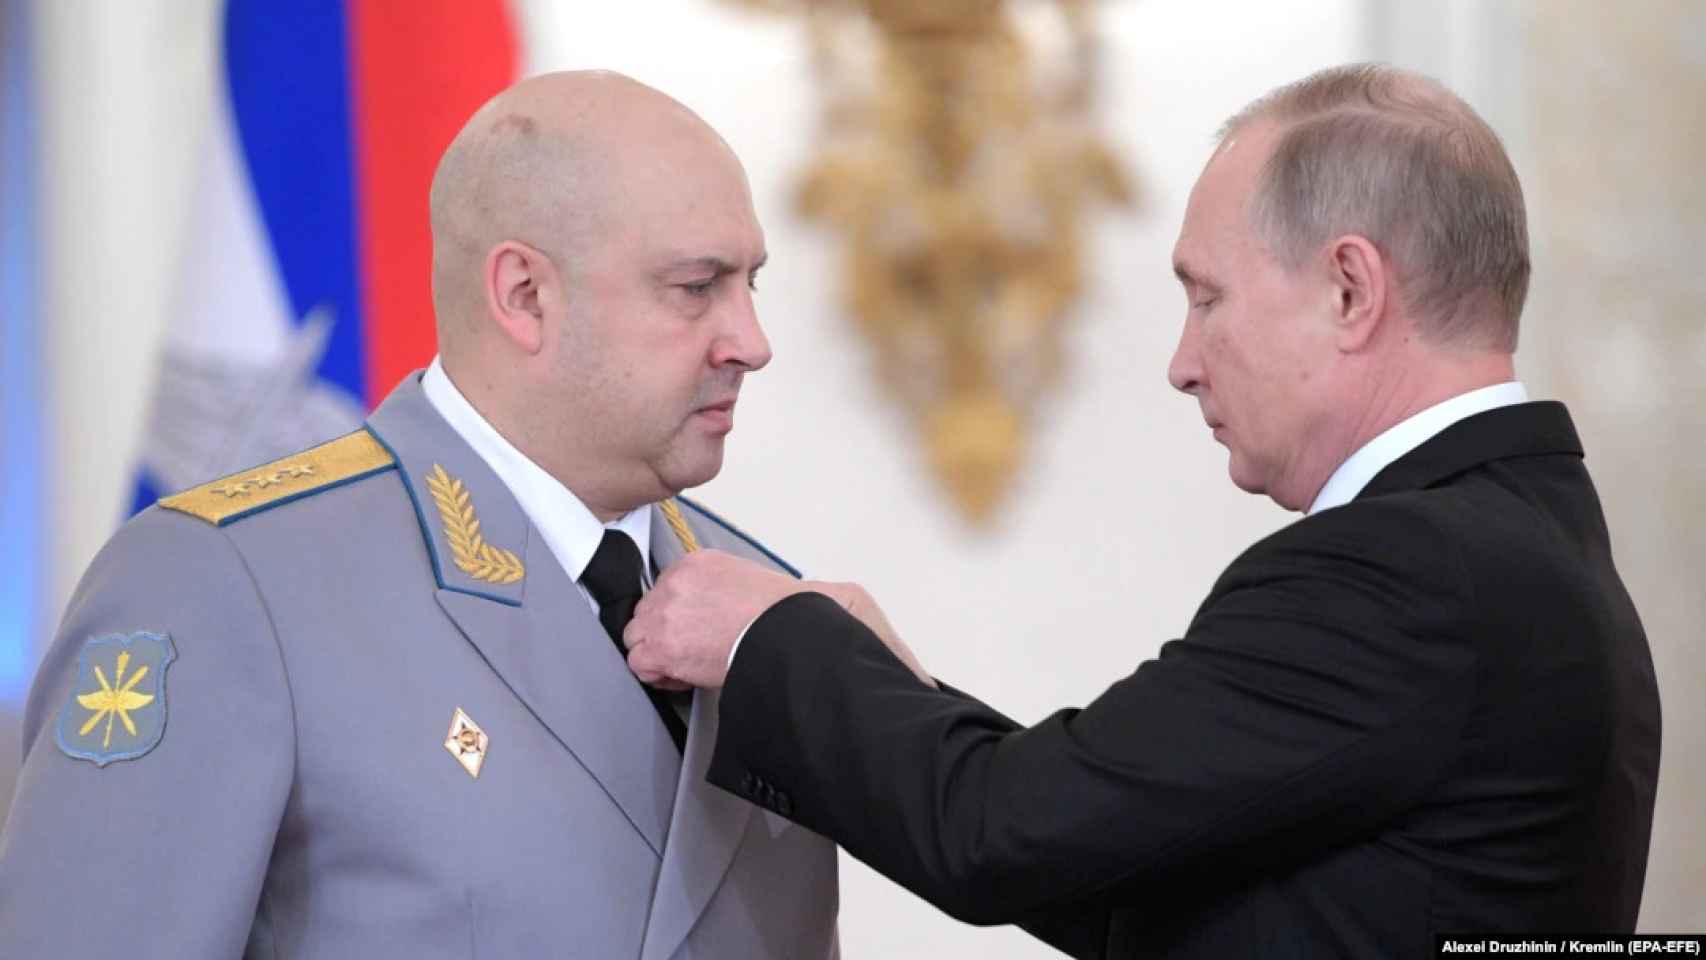 Surovikin recibe una medalla por parte de Putin en 2017 por su papel en la guerra de Siria.